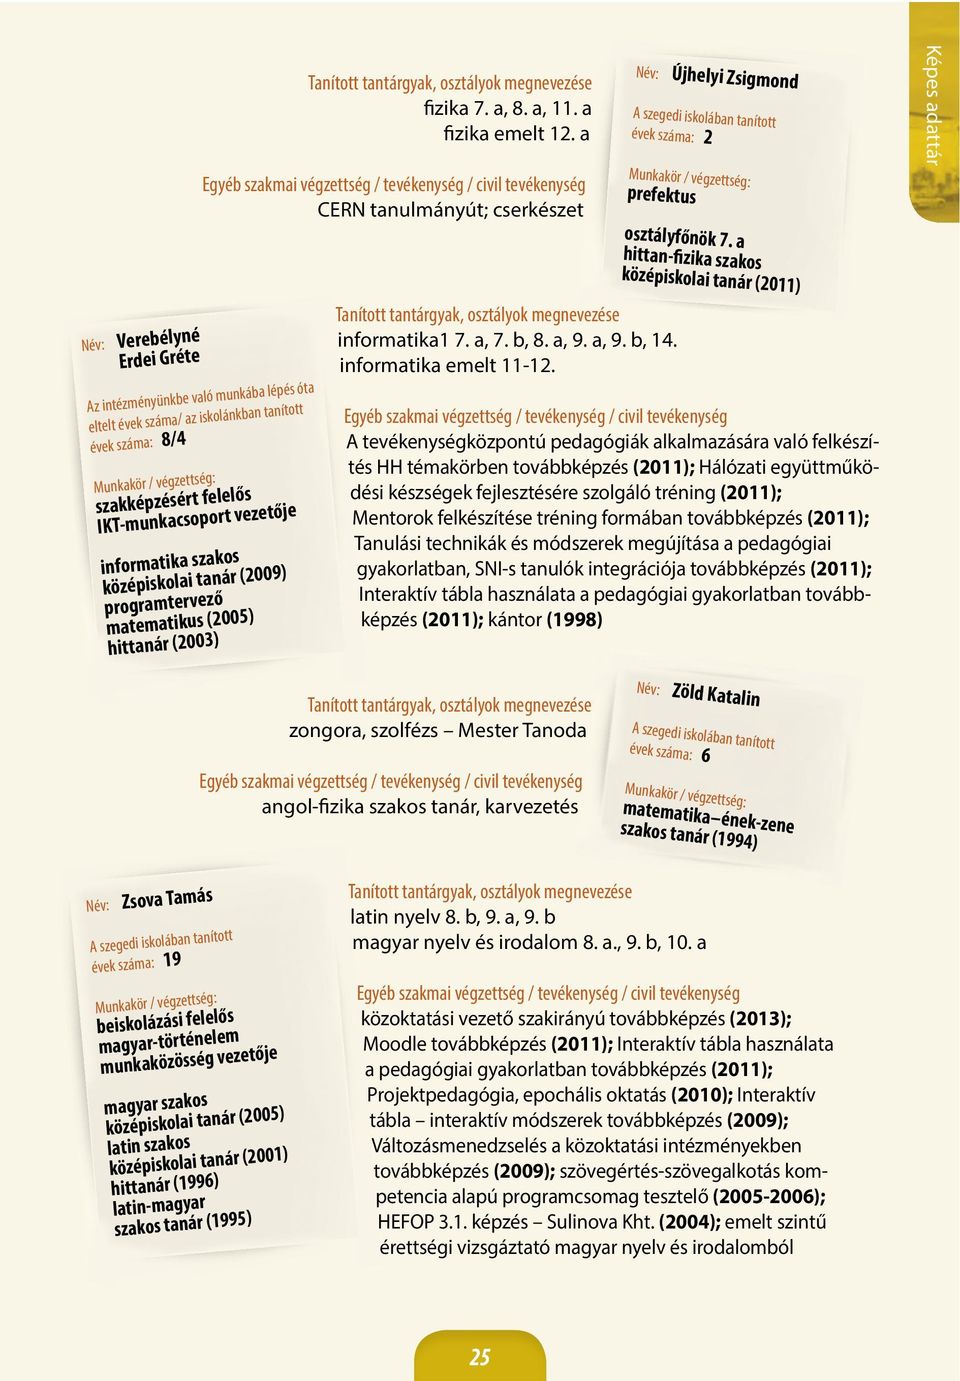 középiskolai tanár (2009) programtervező matematikus (2005) hittanár (2003) Név: Újhelyi Zsigmond évek száma: 2 prefektus informatika1 7. a, 7. b, 8. a, 9. a, 9. b, 14. informatika emelt 11-12.